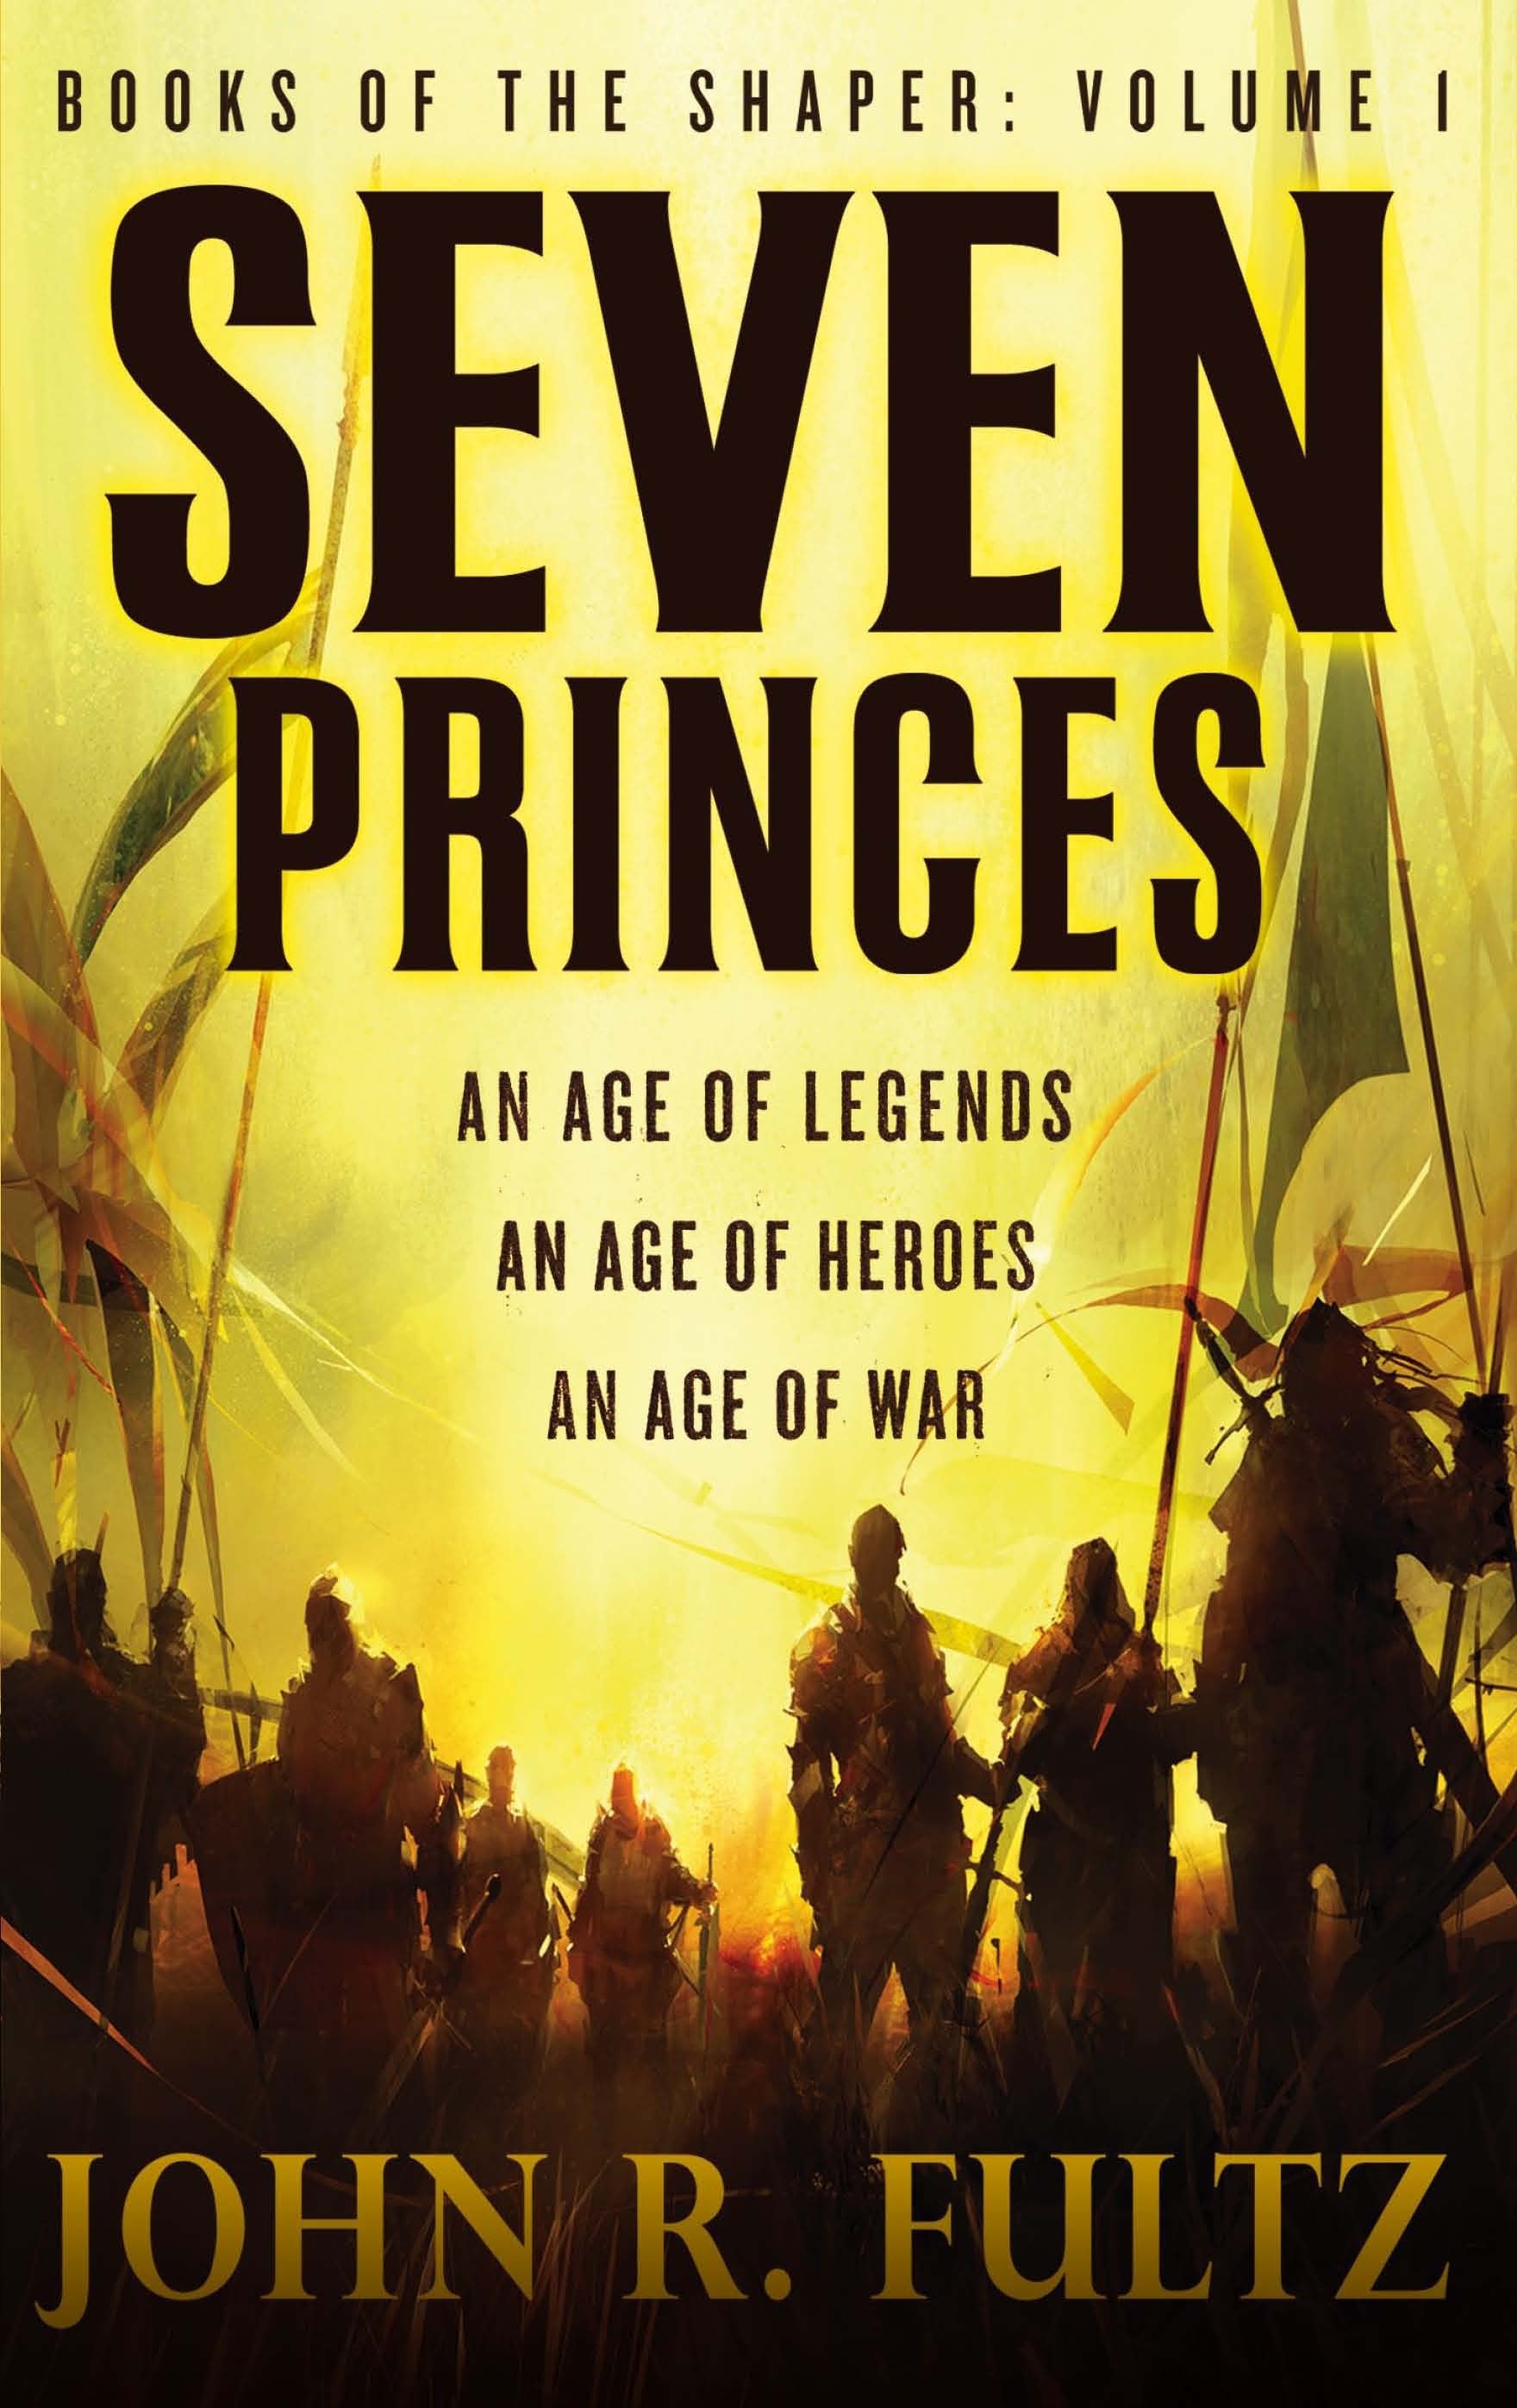 Seven Princes by John R. Fultz